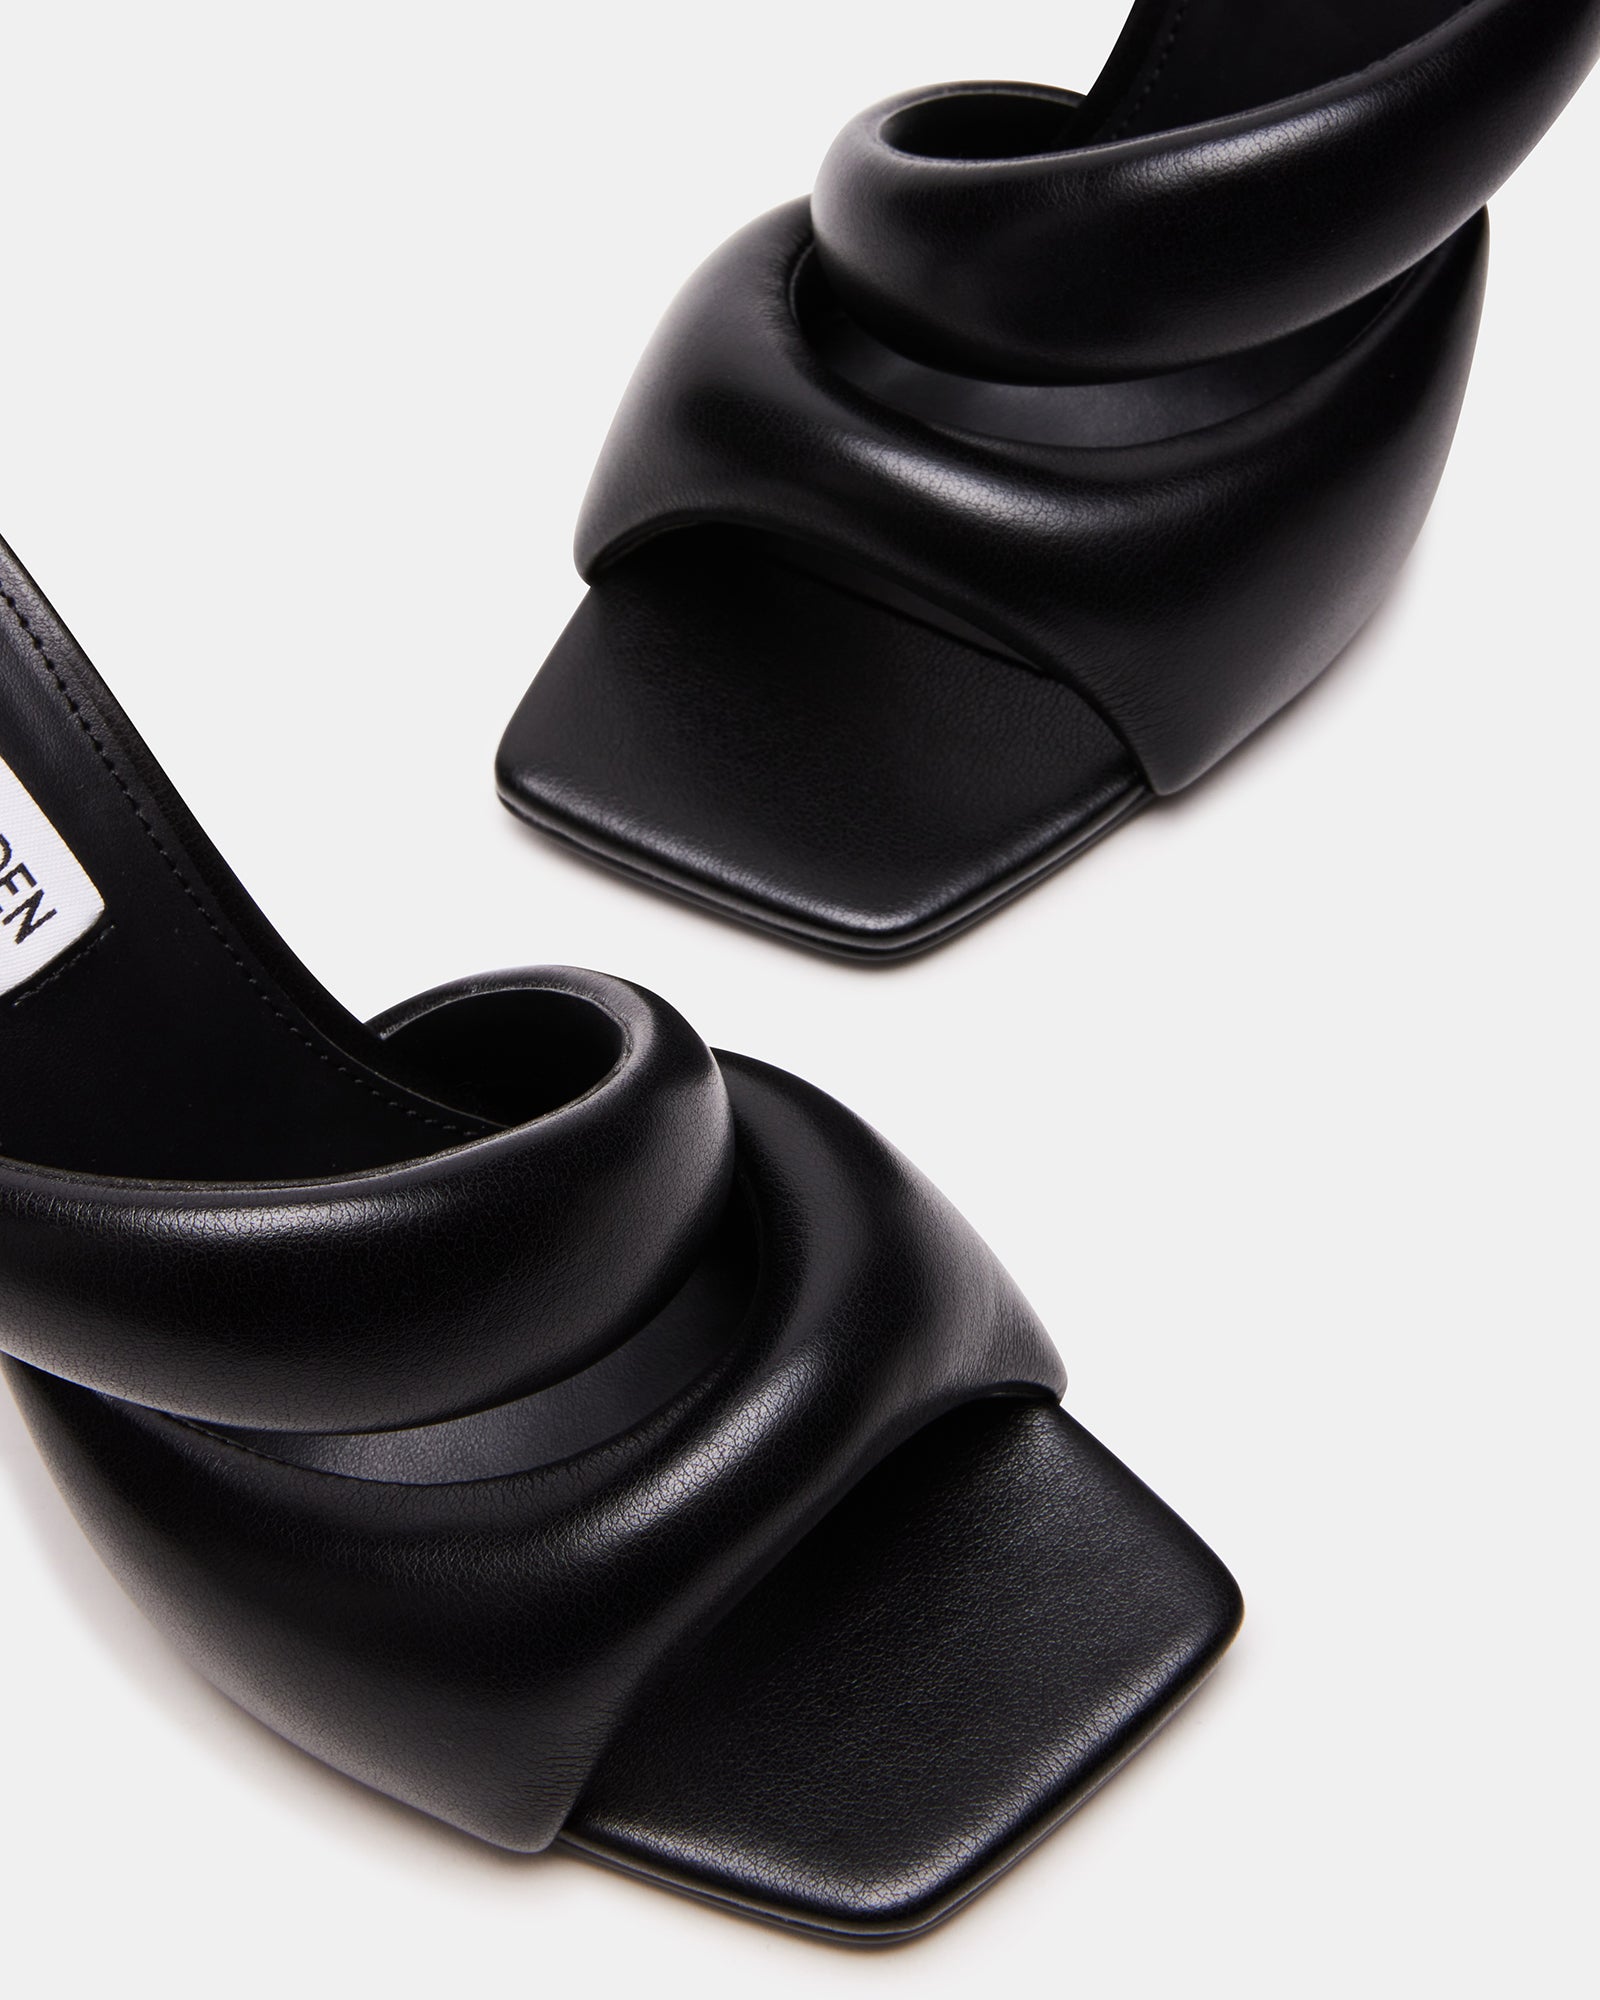 KLOSS Black Tubular Square Toe Mule | Women's Heels – Steve Madden